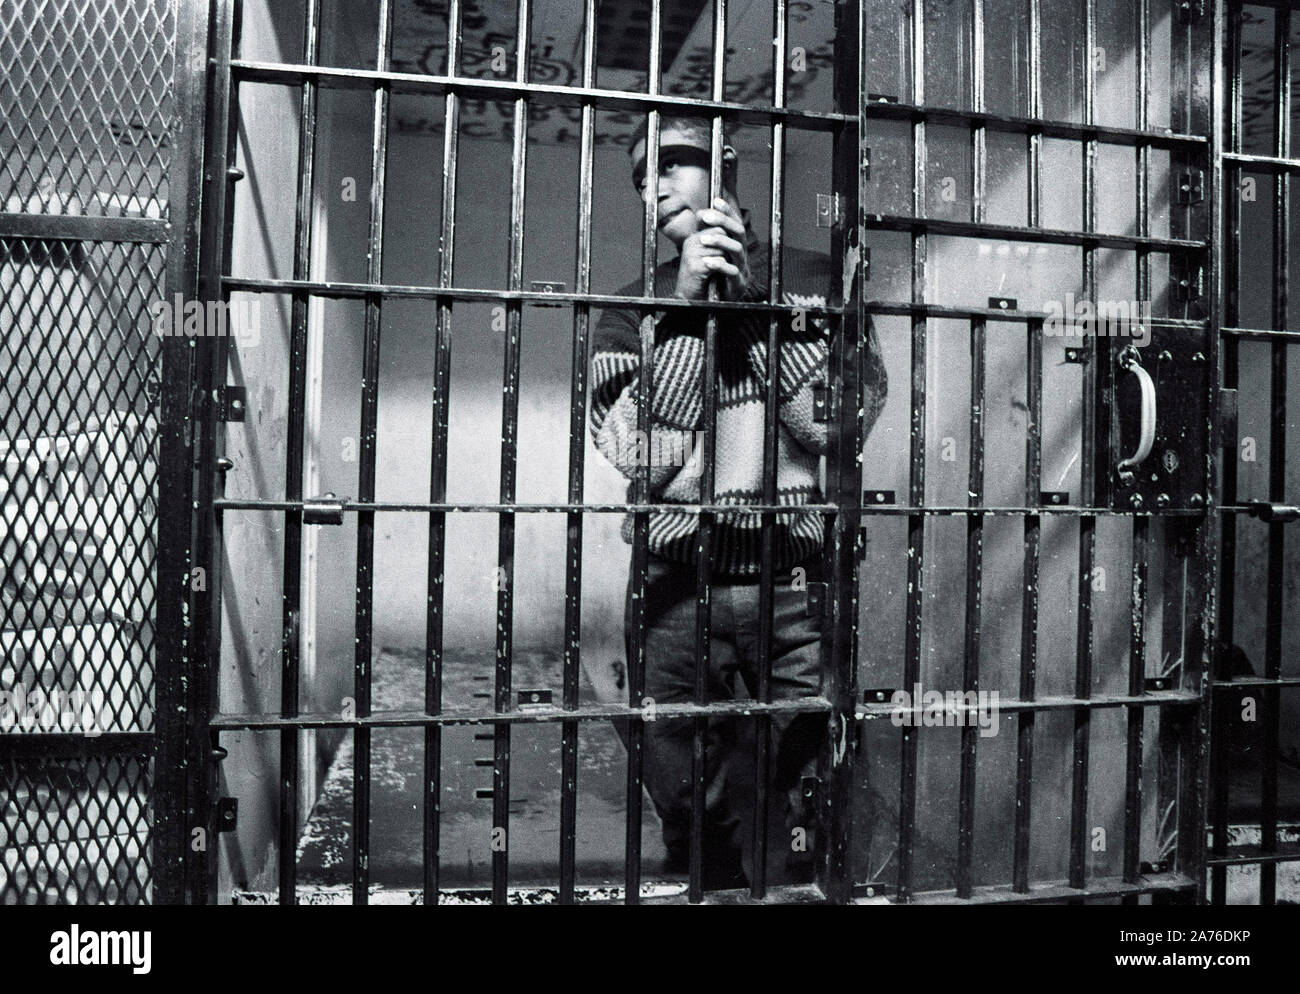 Ein unidentifed afrikanisch-amerikanischer Kriegsgefangenschaft schaut aus einem Betrieb Zelle in Boston Polizei Station B3 in Boston, Ma USA 1987, alle Gefangenen als unschuldig, bis gefunden juilty durch ein Gericht. Foto von Bill belknap. Weitere Infos unter optional Stockfoto